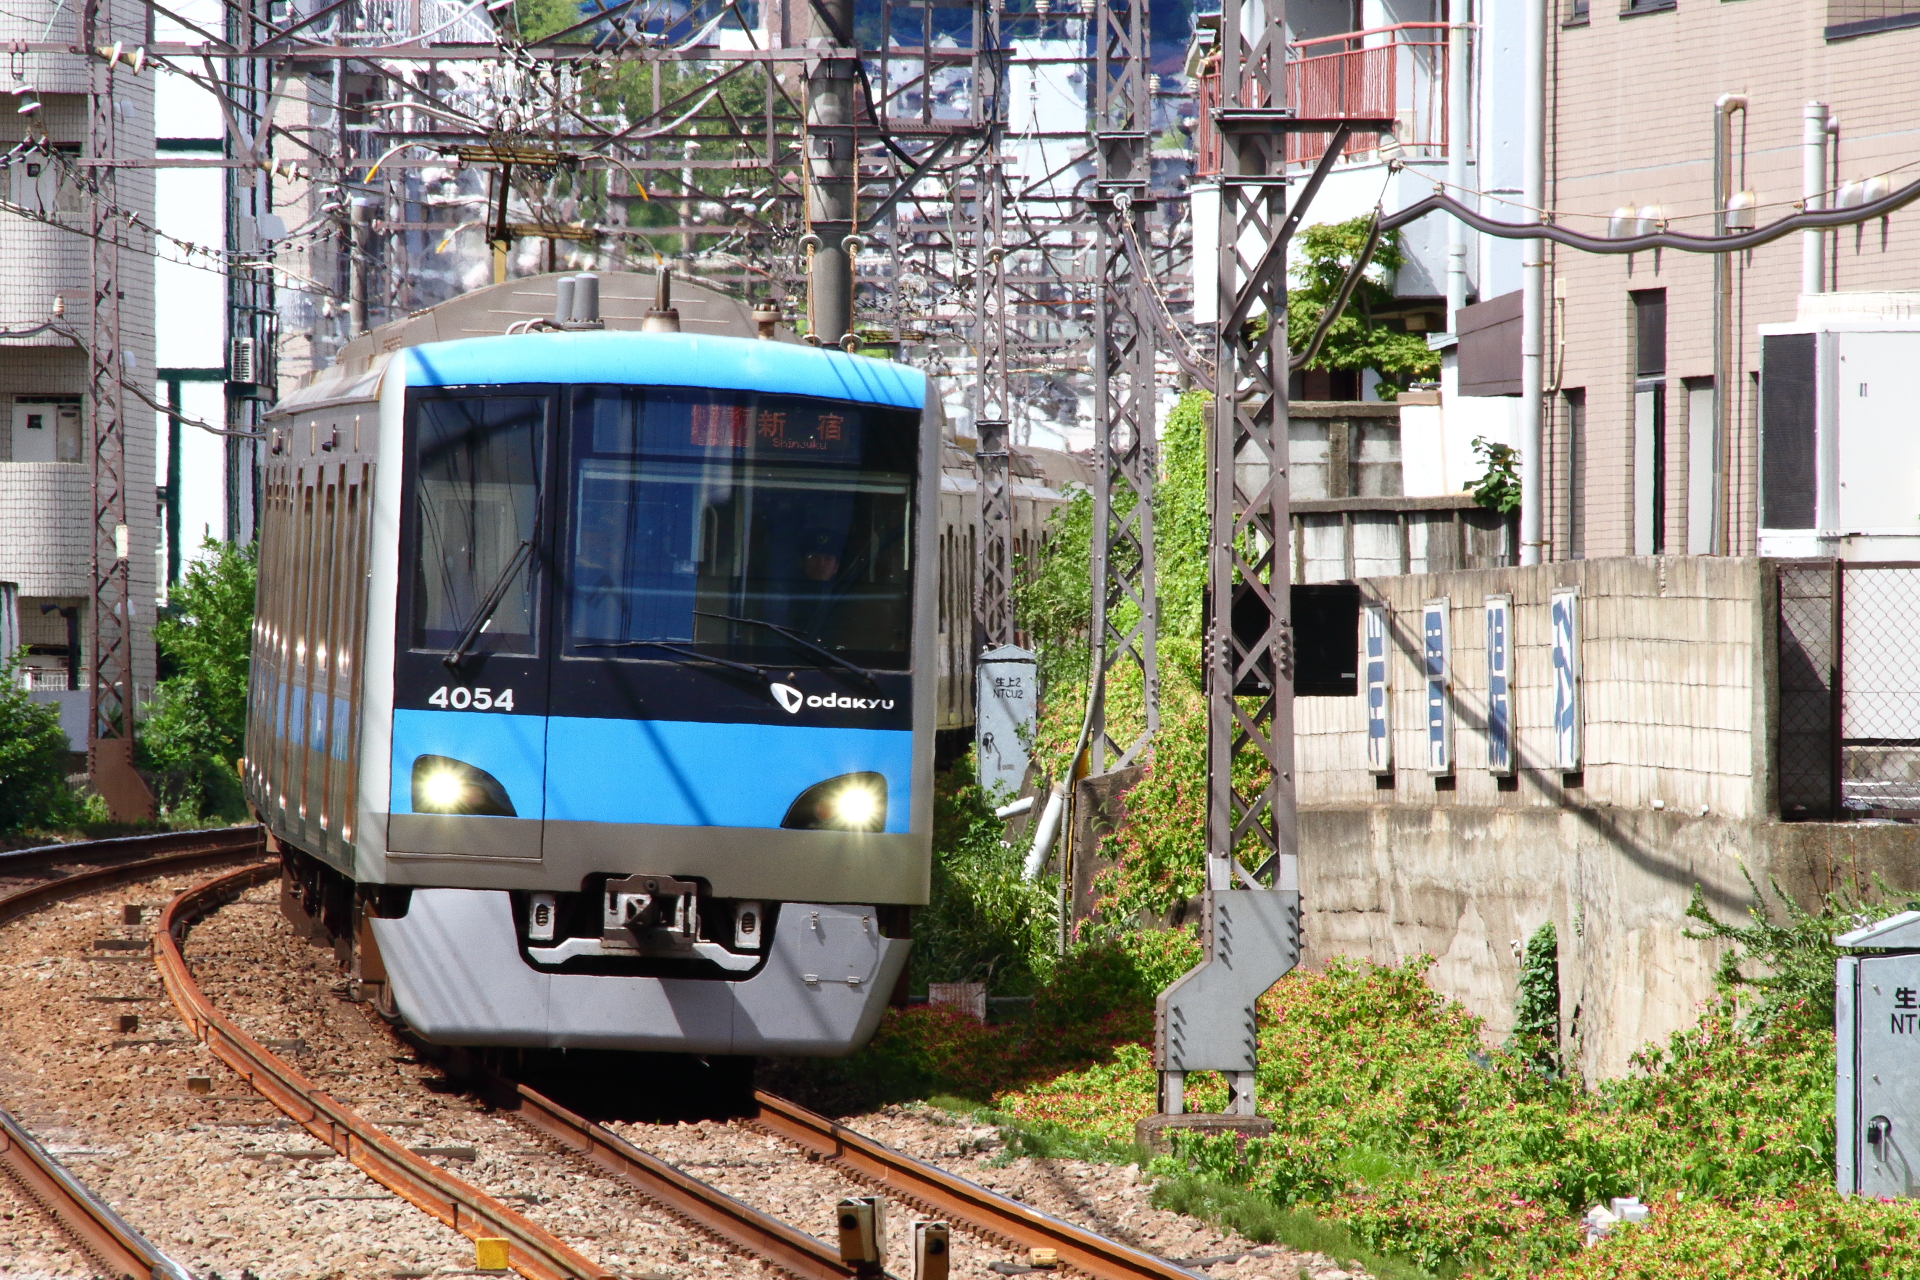 小田急の車両は全部でいくつの都道府県を走っているのか Odapedia 小田急を中心とした鉄道に関するブログメディア